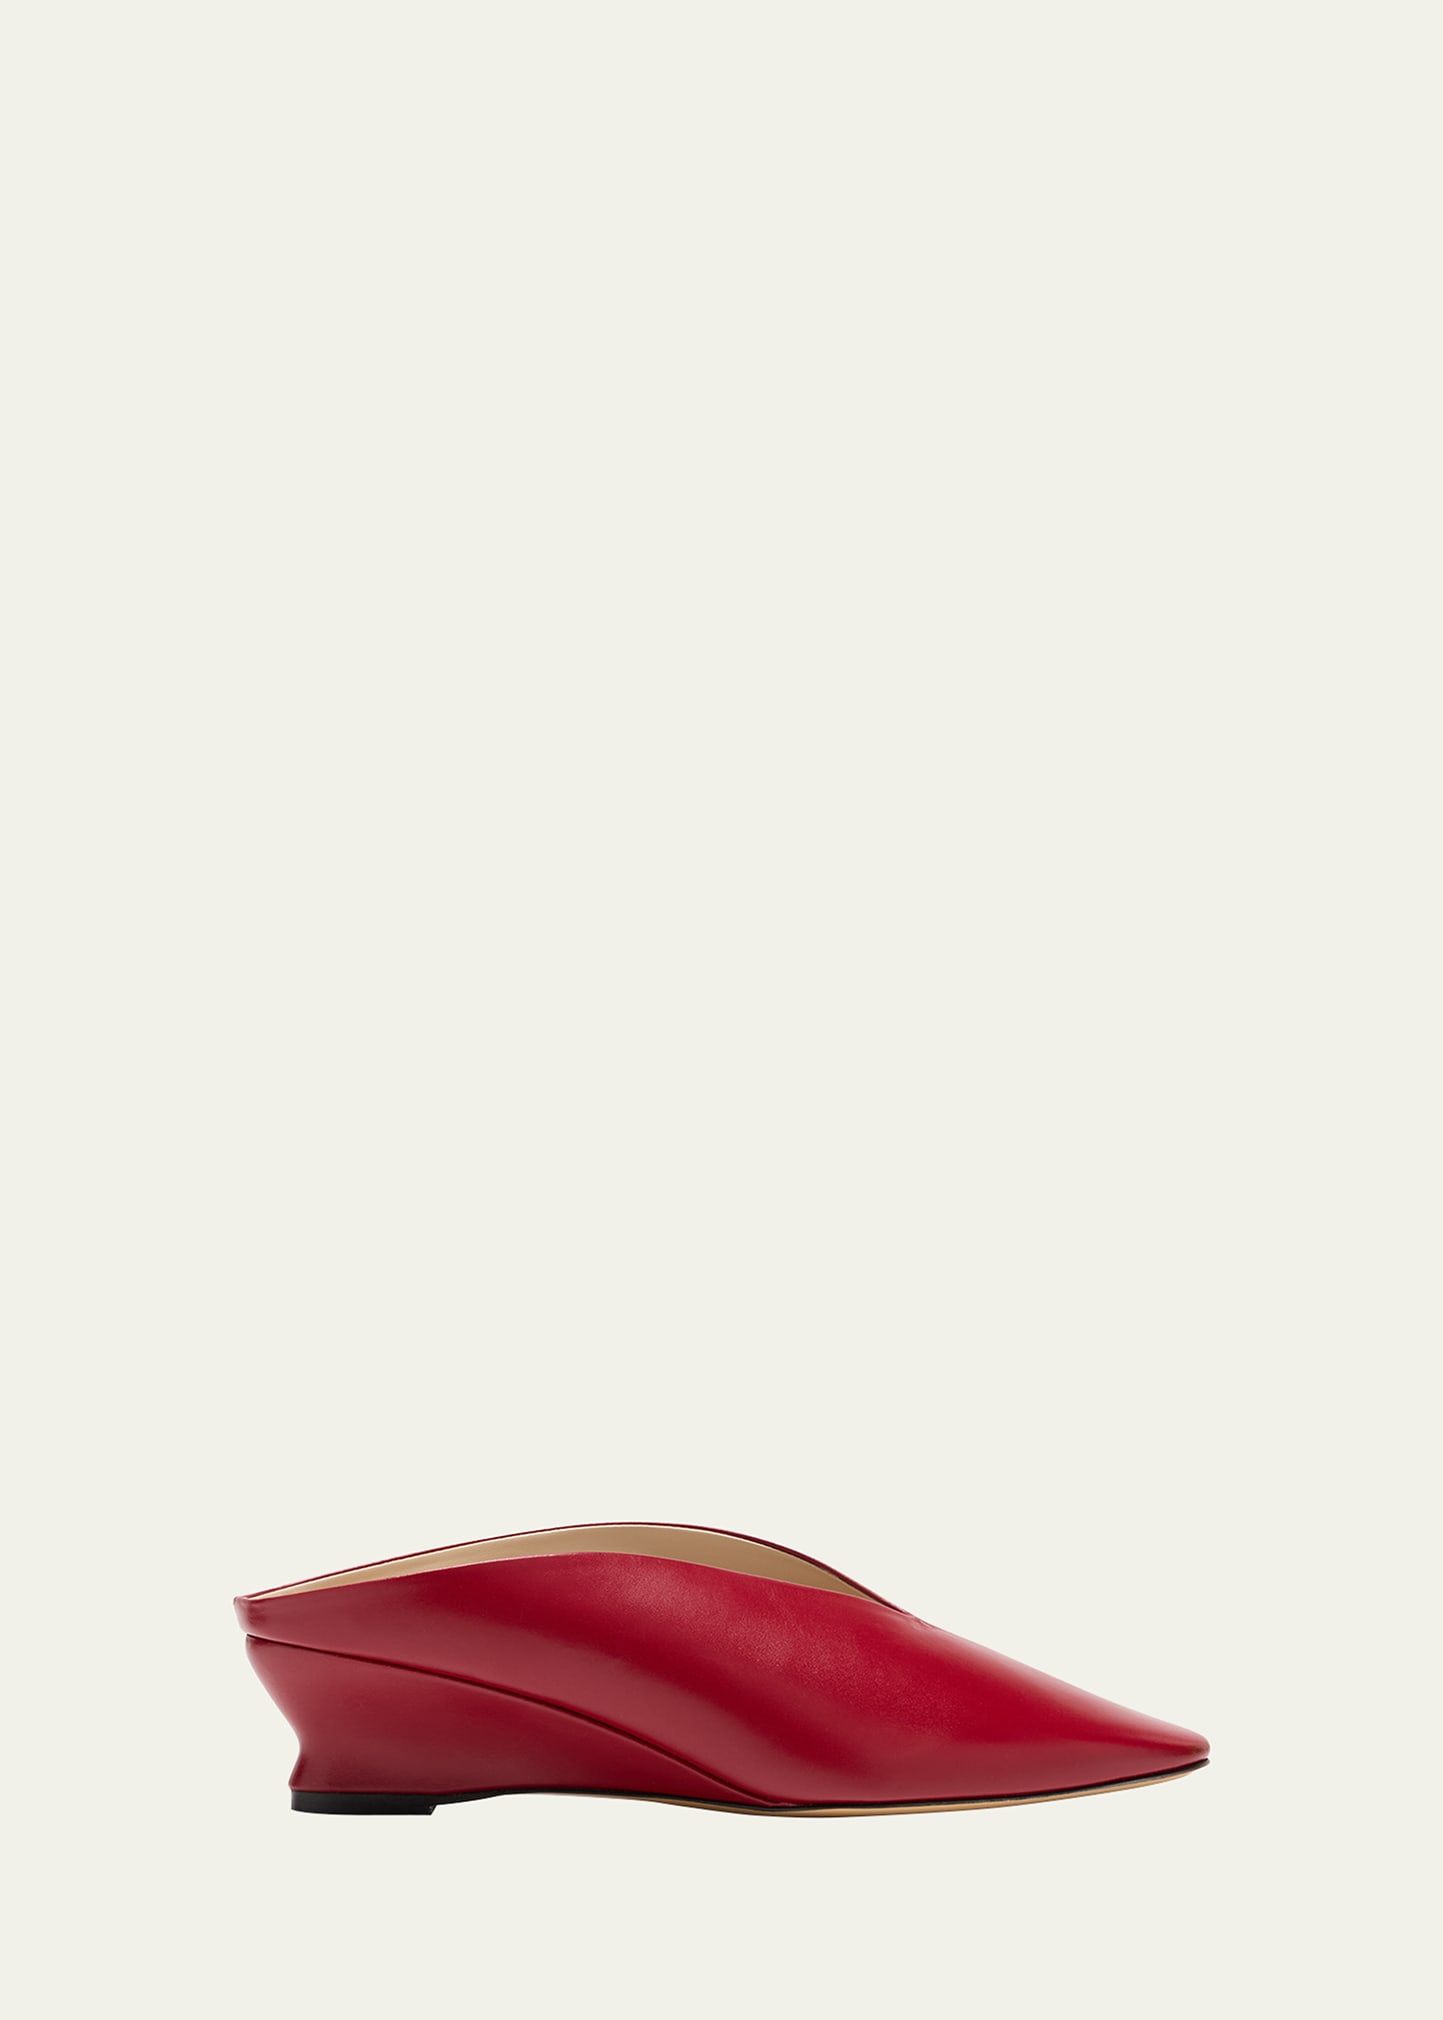 Le Monde Beryl Regency Leather Wedge Ballerina Mules In Red